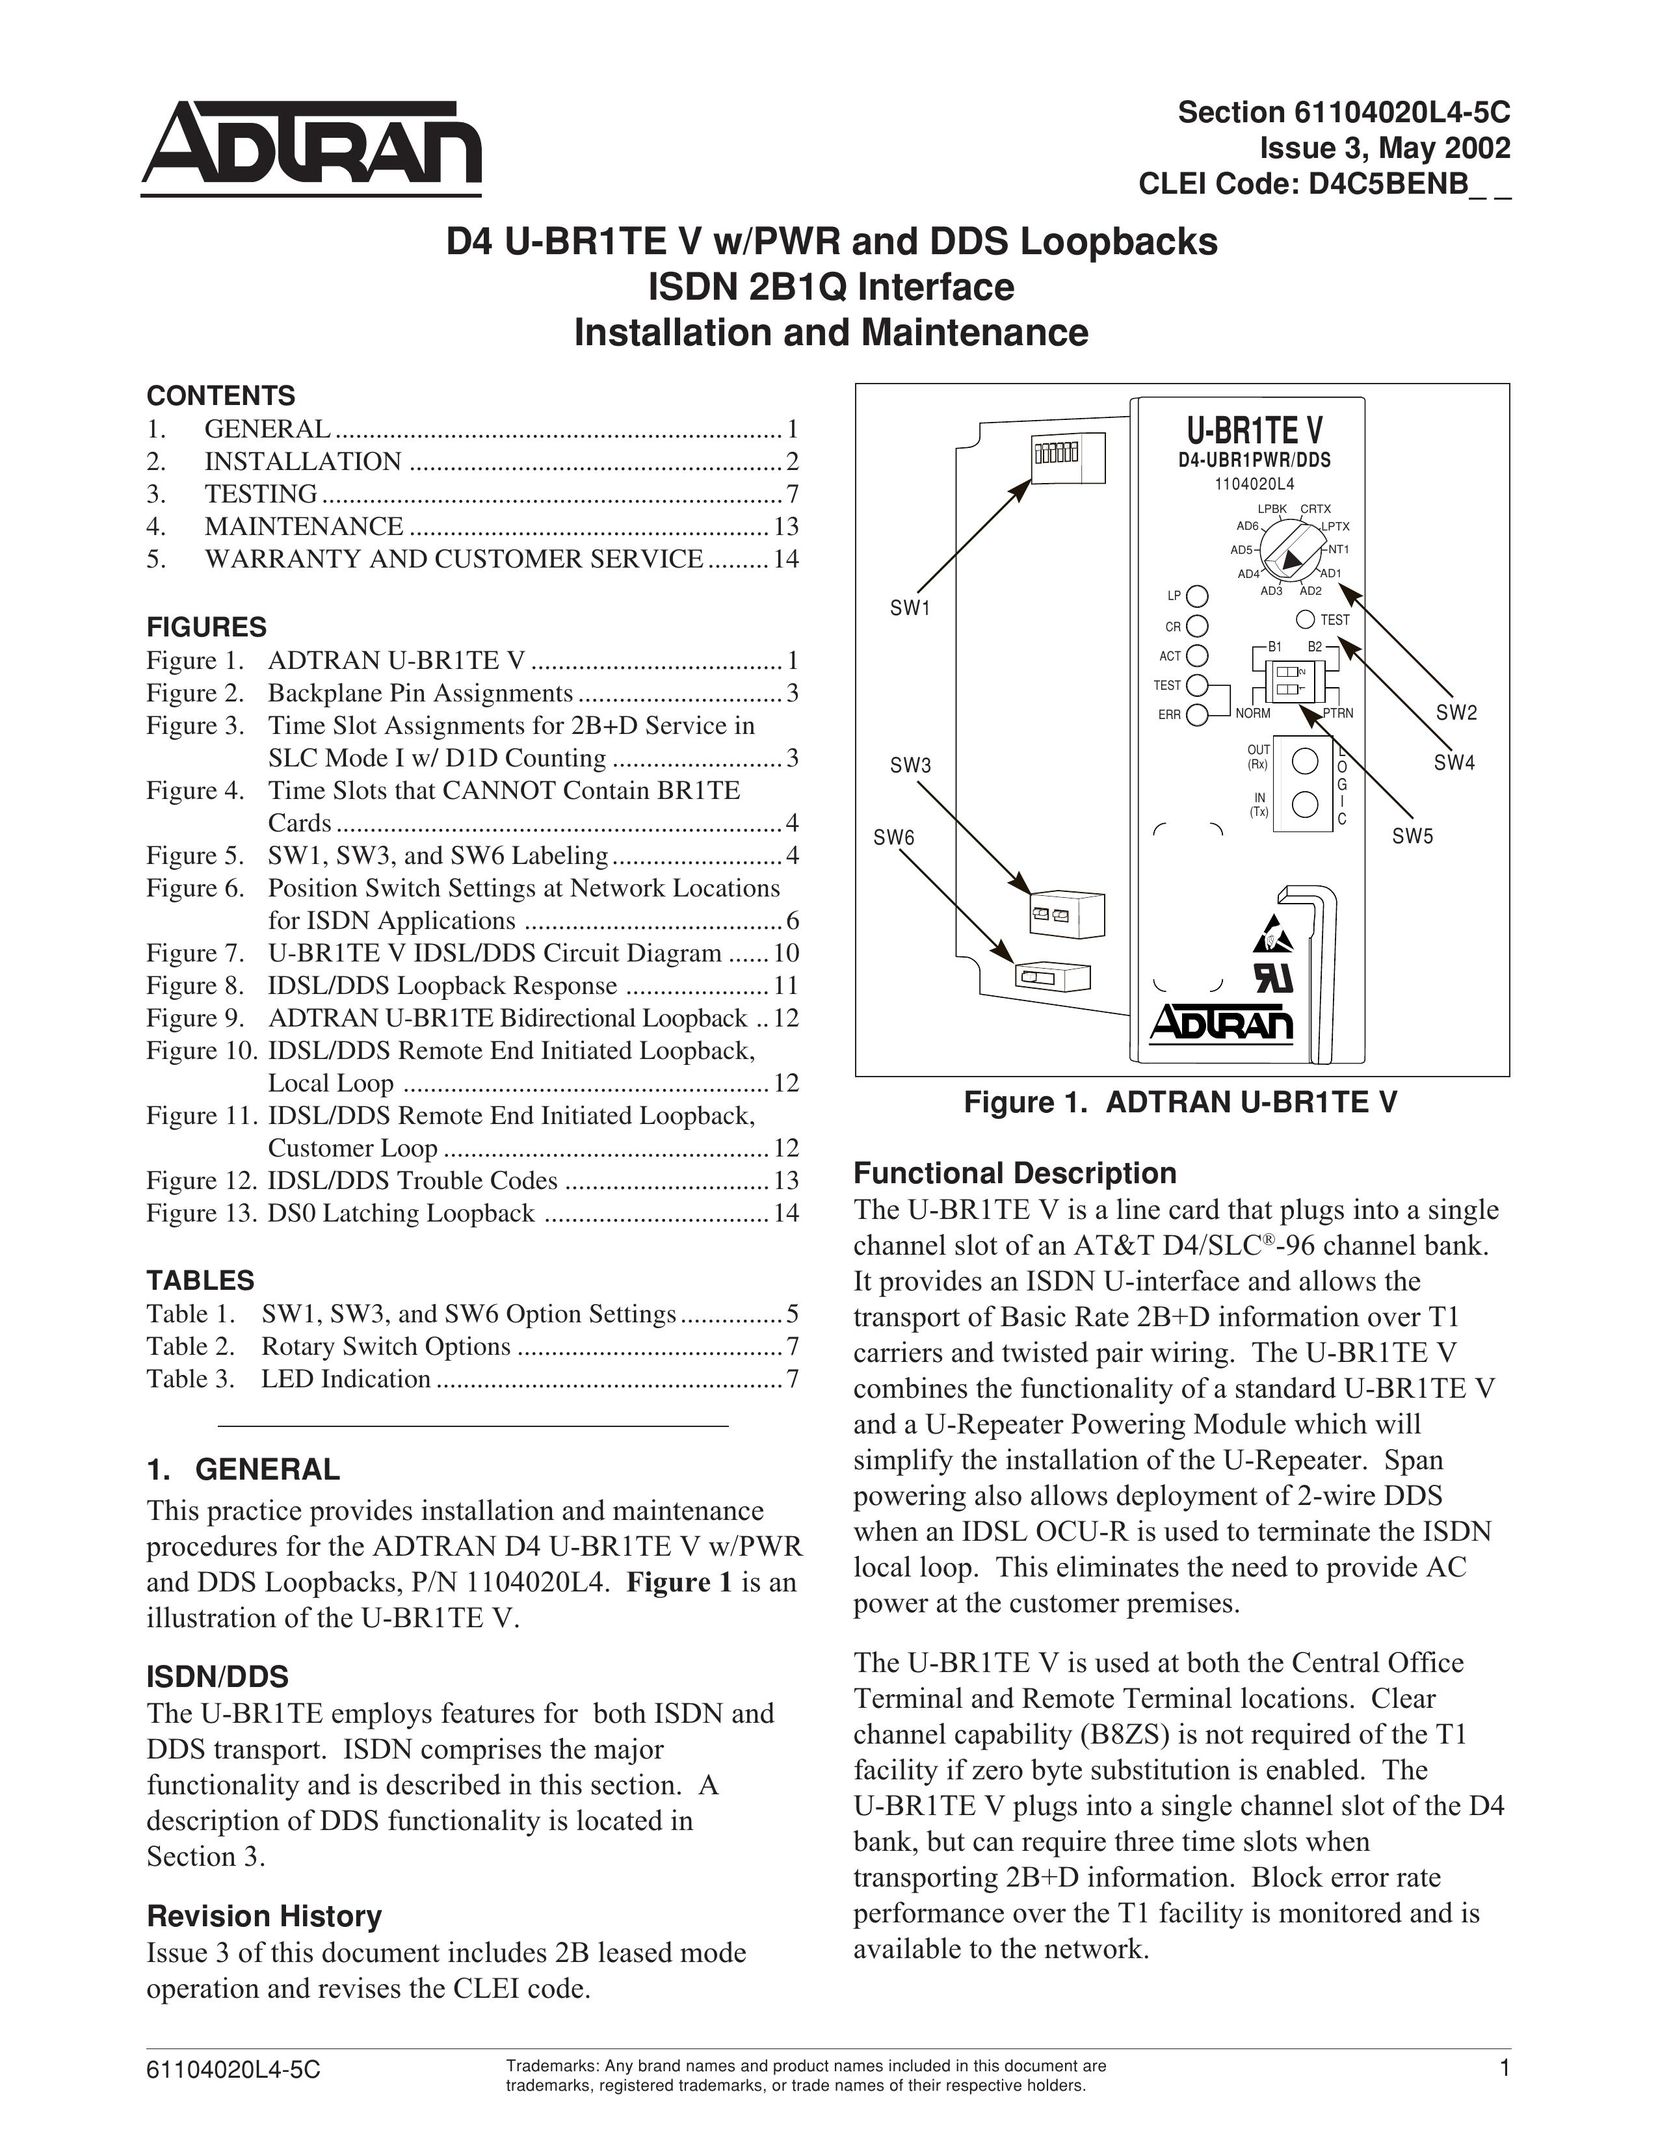 ADTRAN D4 U-BR1TE V Switch User Manual